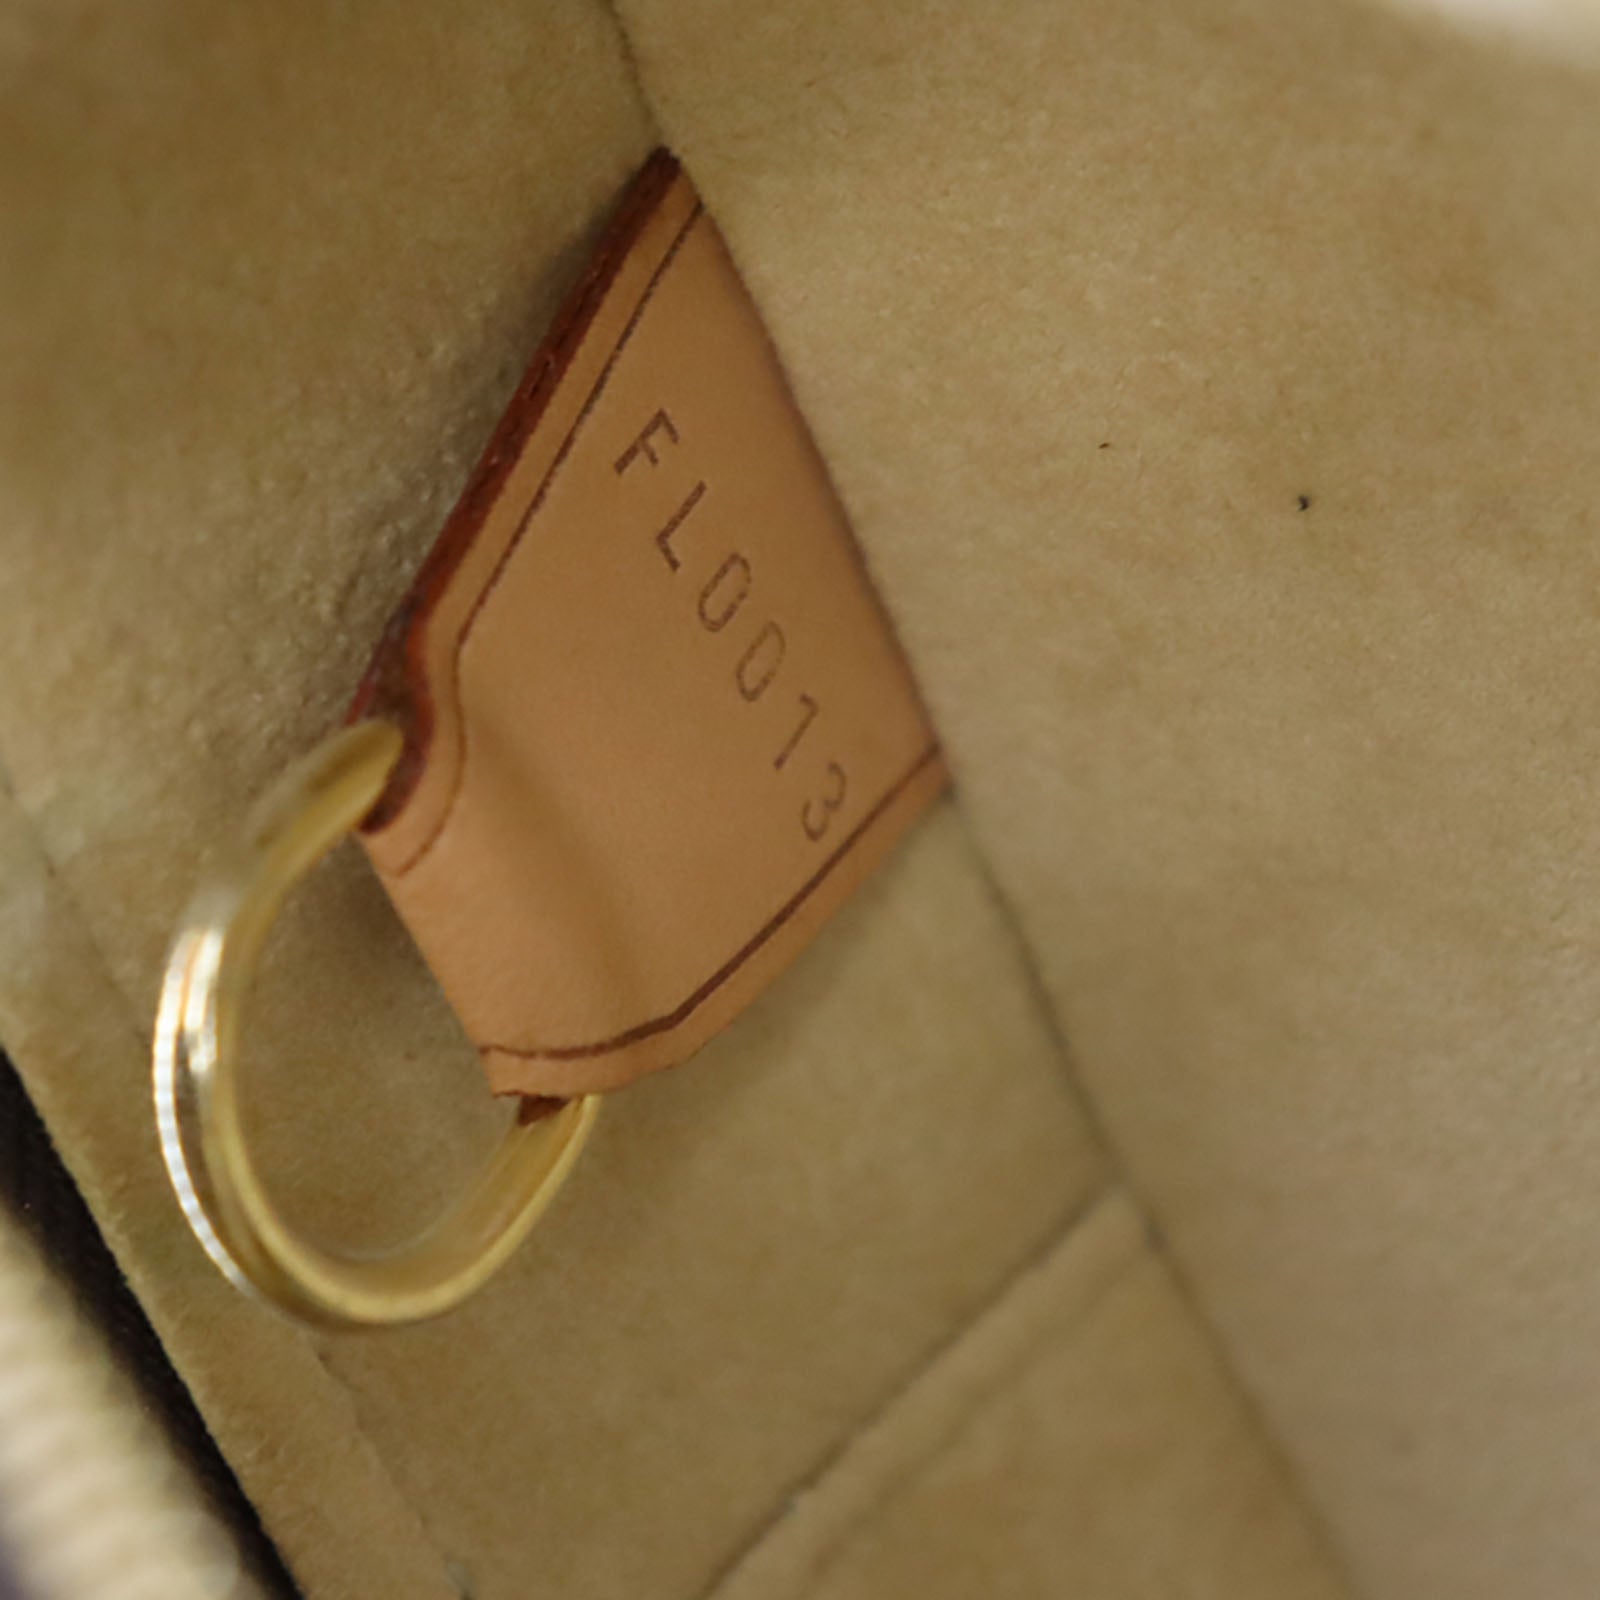 Authenticated Used LOUIS VUITTON Louis Vuitton Cite GM Shoulder Bag M51181  Monogram Canvas Leather Brown 